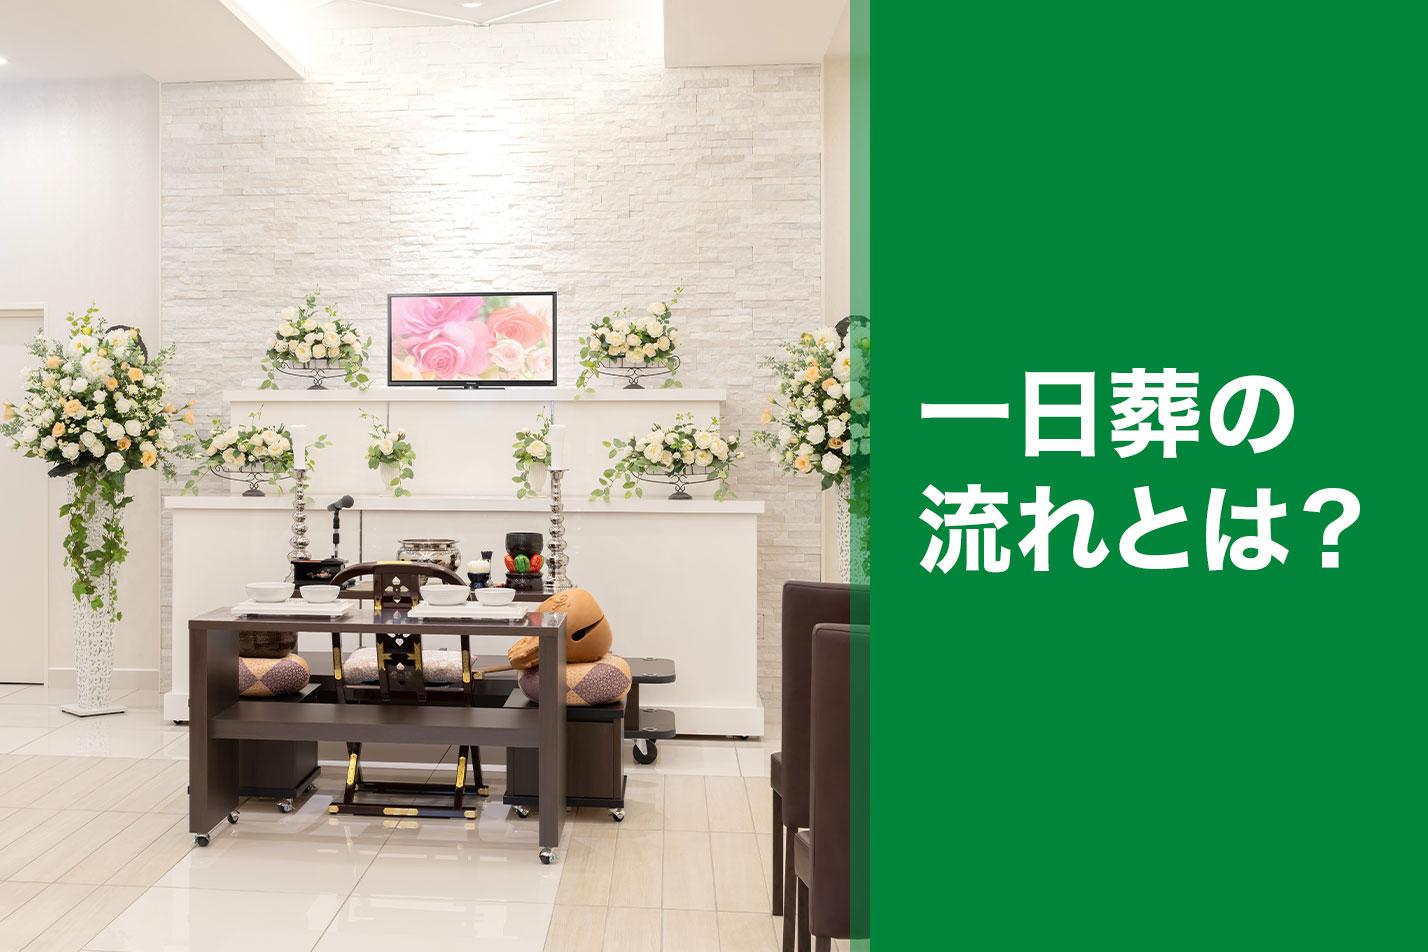  西東京市における一日葬の流れとは？のイメージ画像